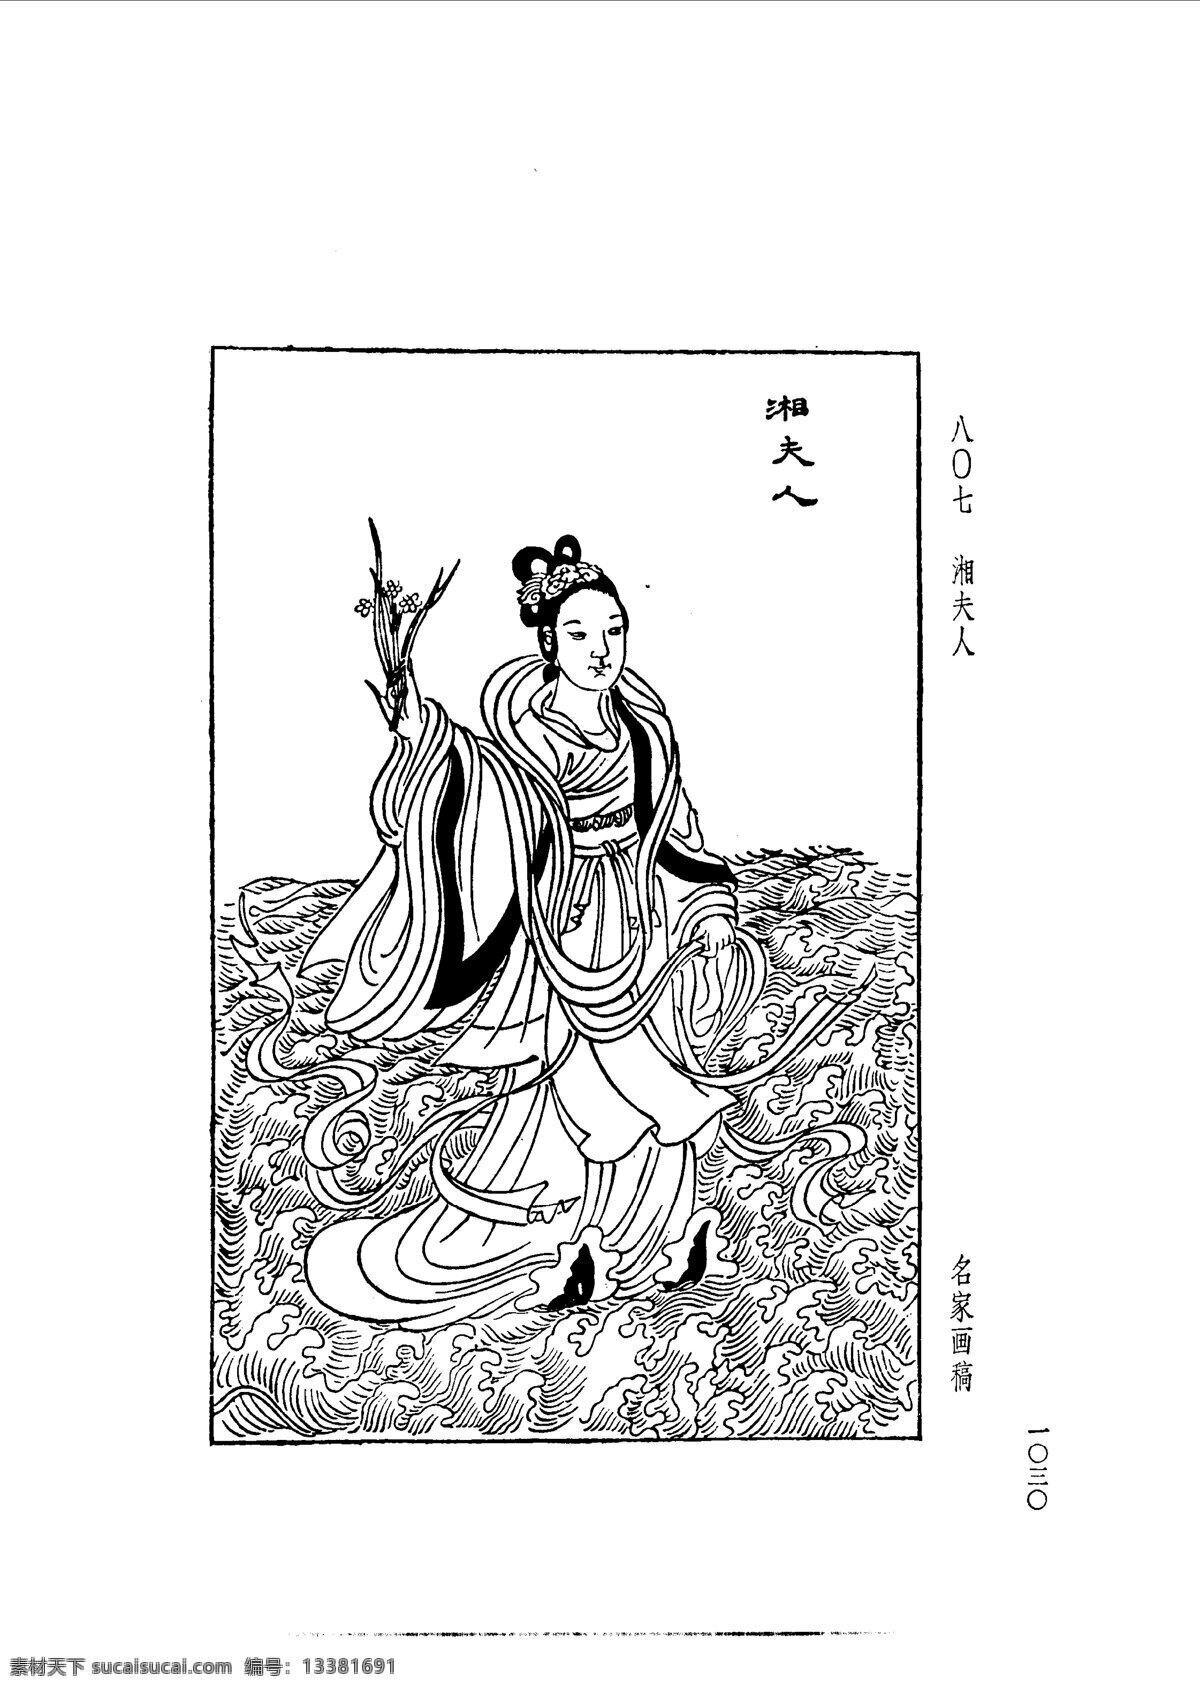 中国 古典文学 版画 选集 上 下册1058 设计素材 版画世界 书画美术 白色